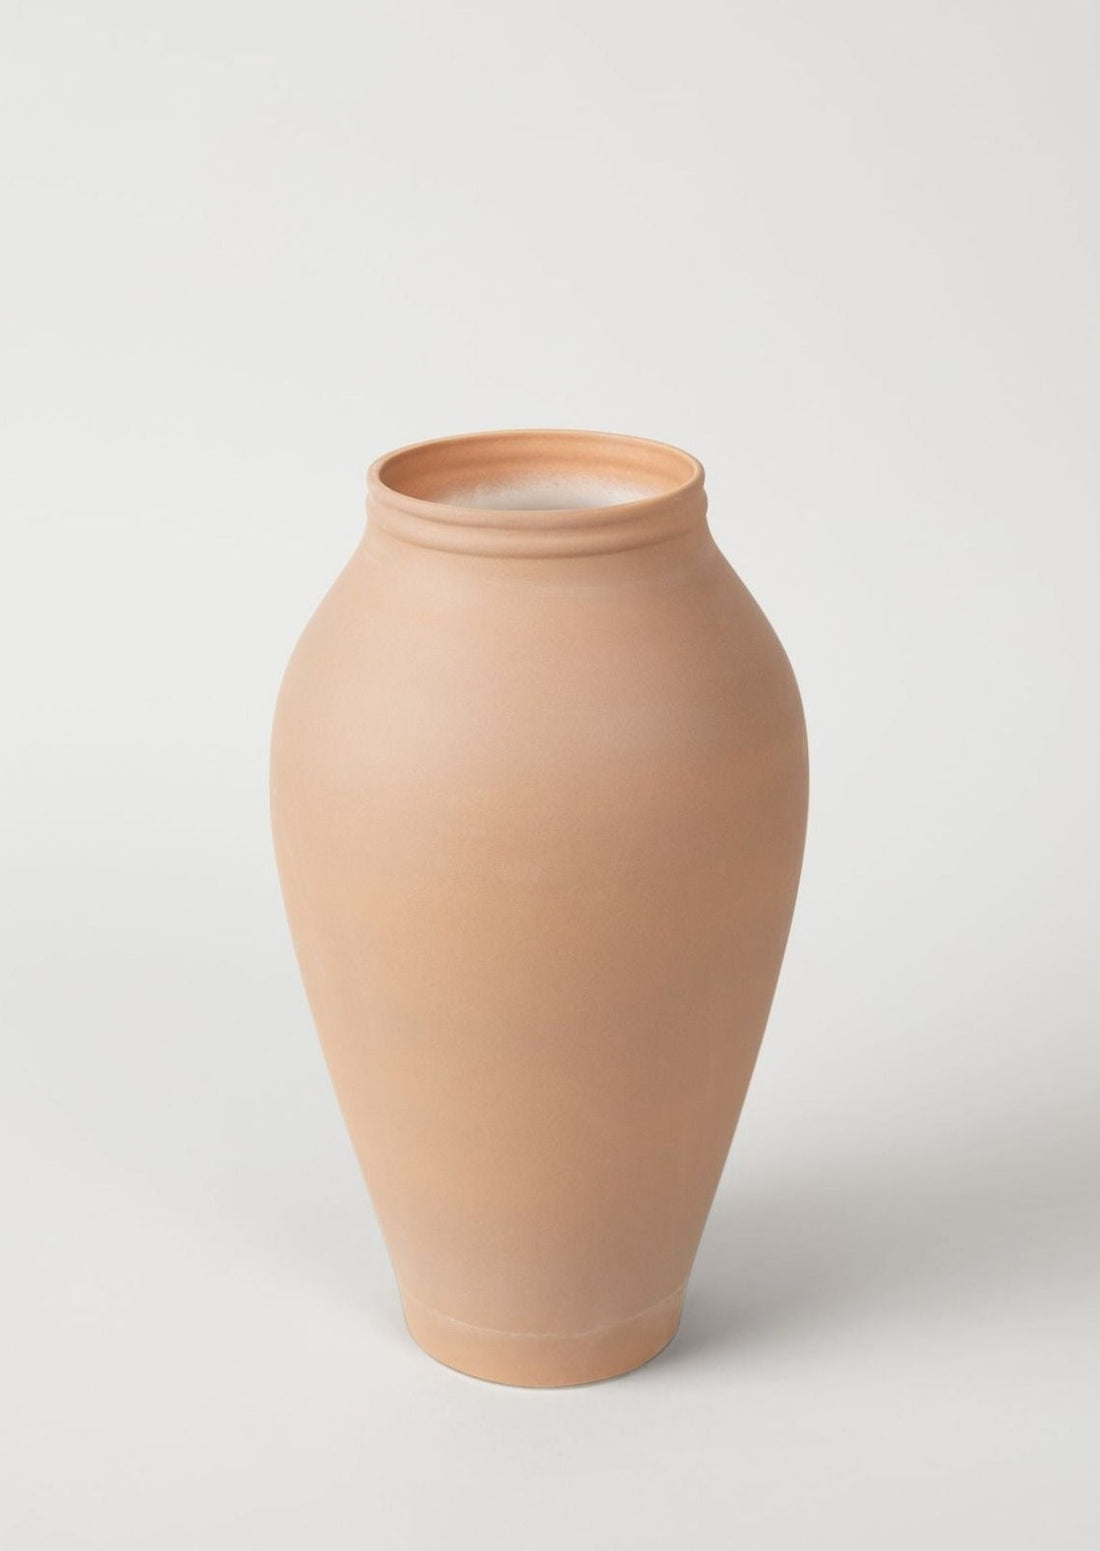 Terra Cotta Medium Ceramic Vase